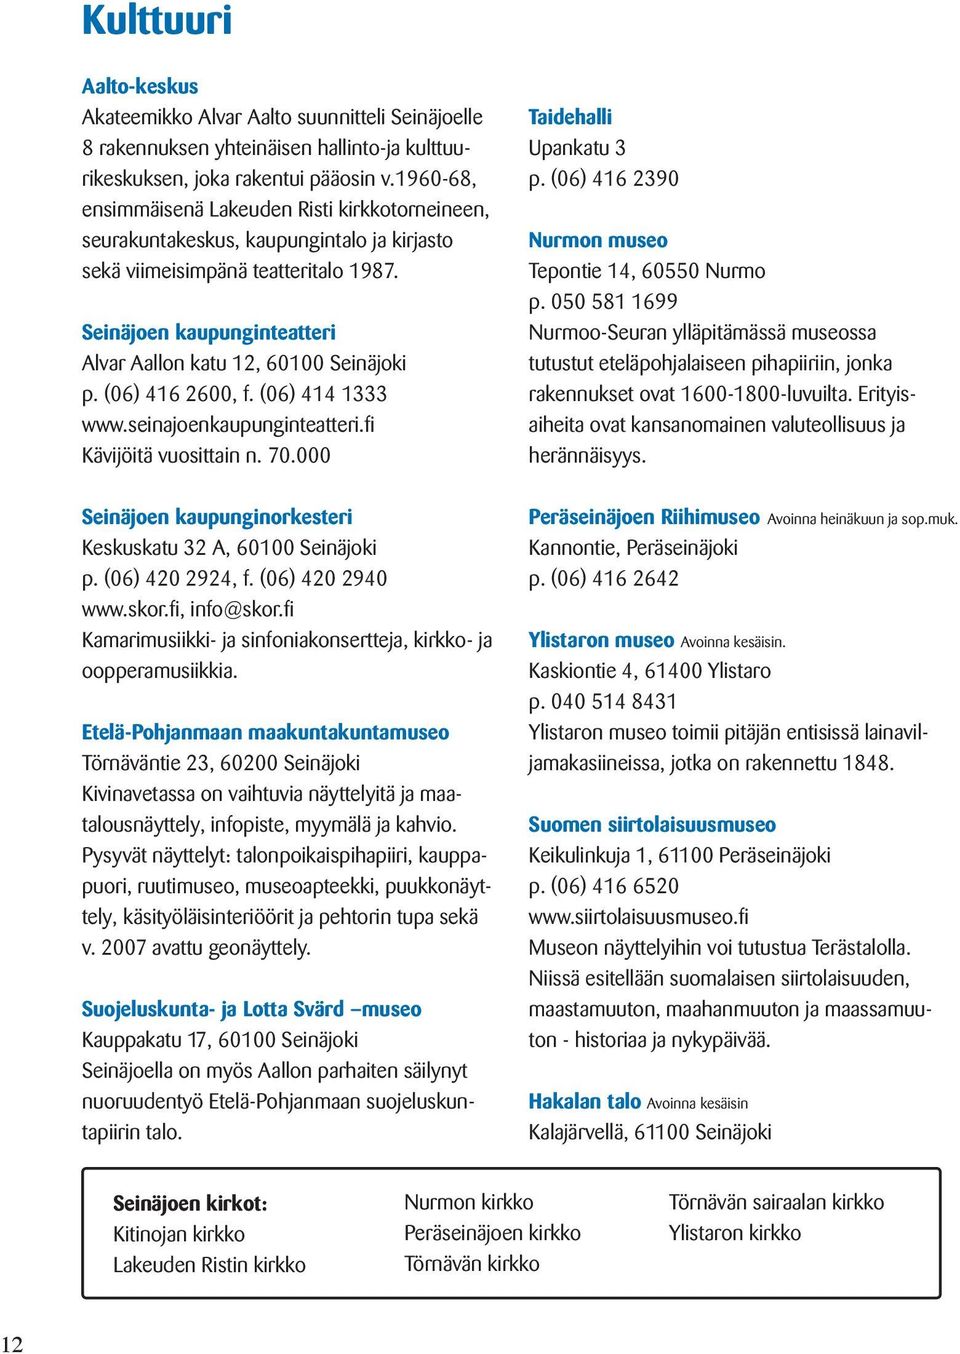 Seinäjoen kaupunginteatteri Alvar Aallon katu 12, 60100 Seinäjoki p. (06) 416 2600, f. (06) 414 1333 www.seinajoenkaupunginteatteri.fi Kävijöitä vuosittain n. 70.